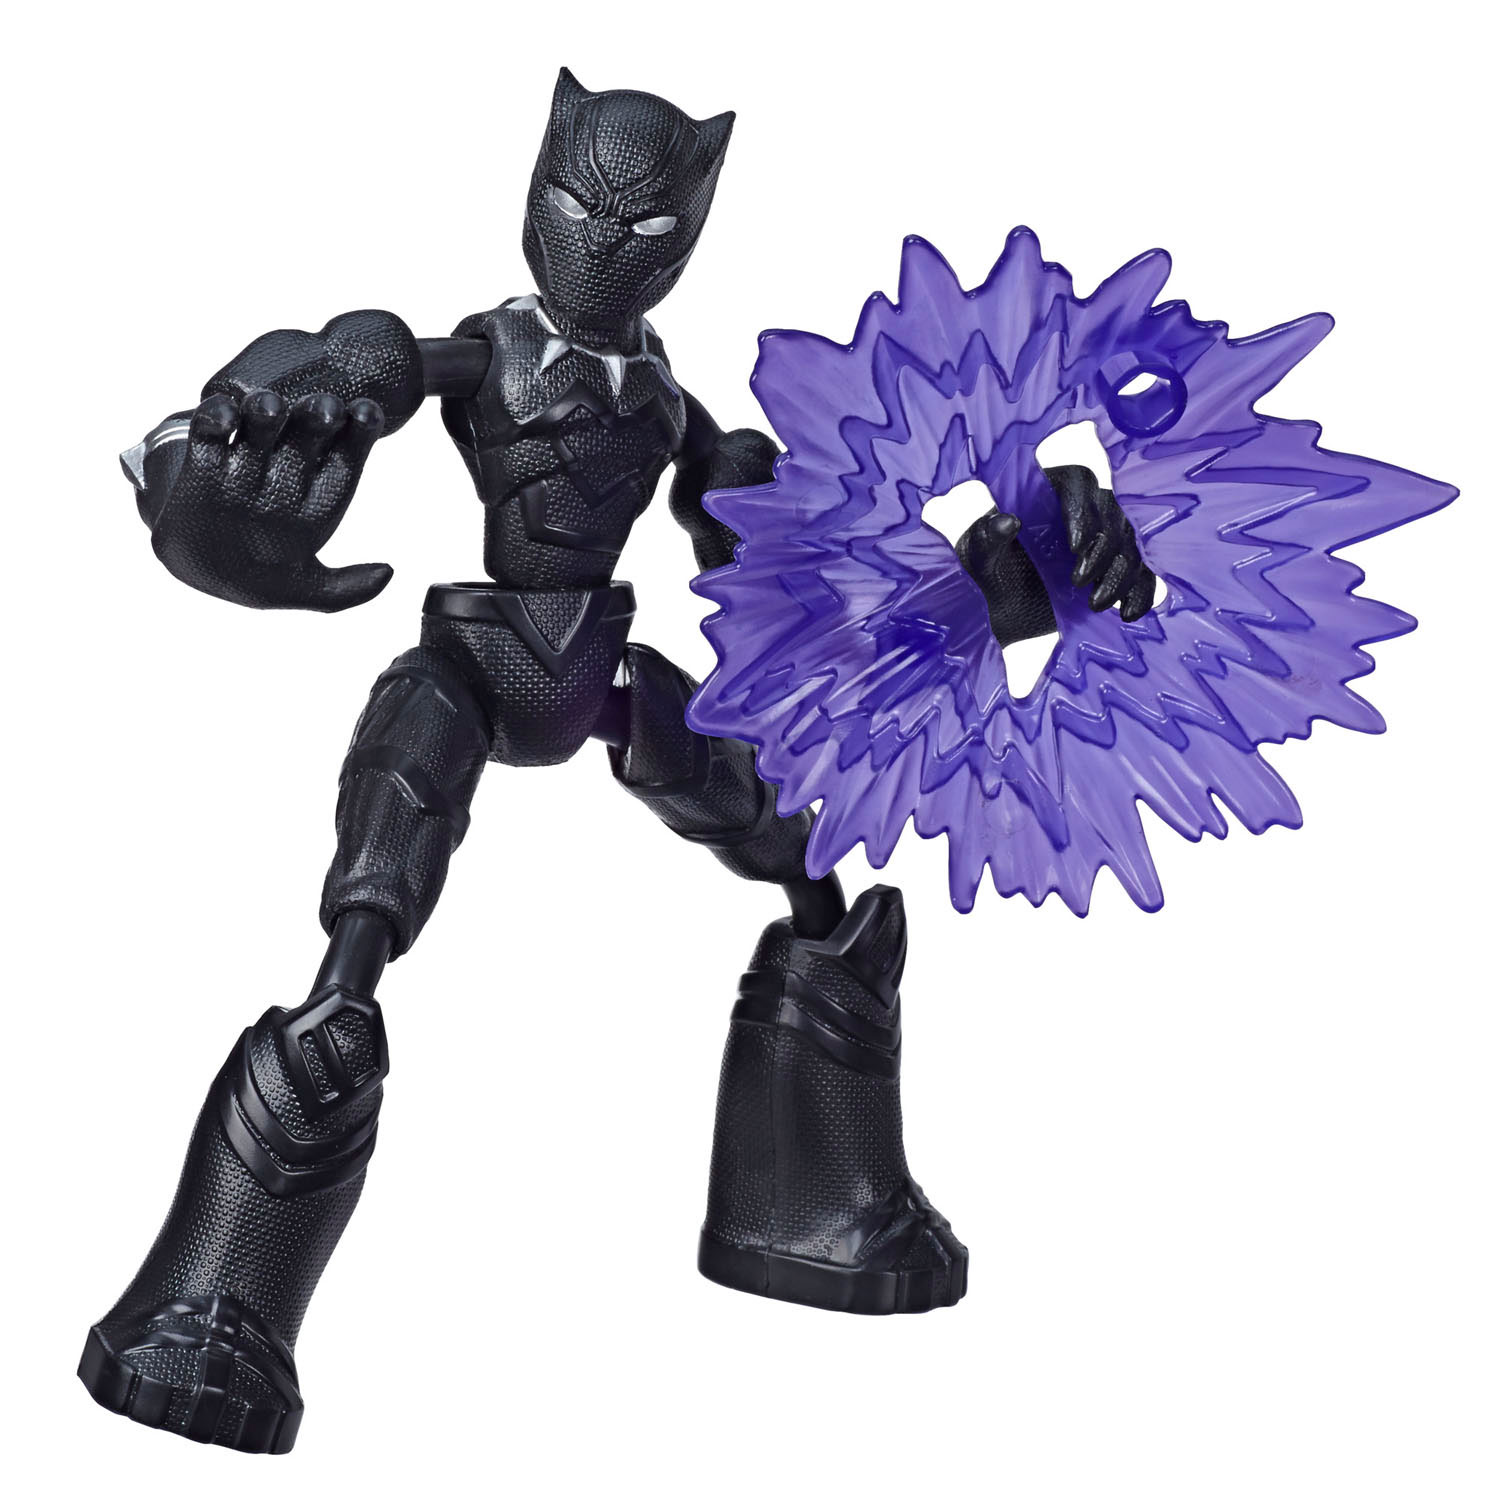 Flexibel Actiefiguur - Avengers Black Panther